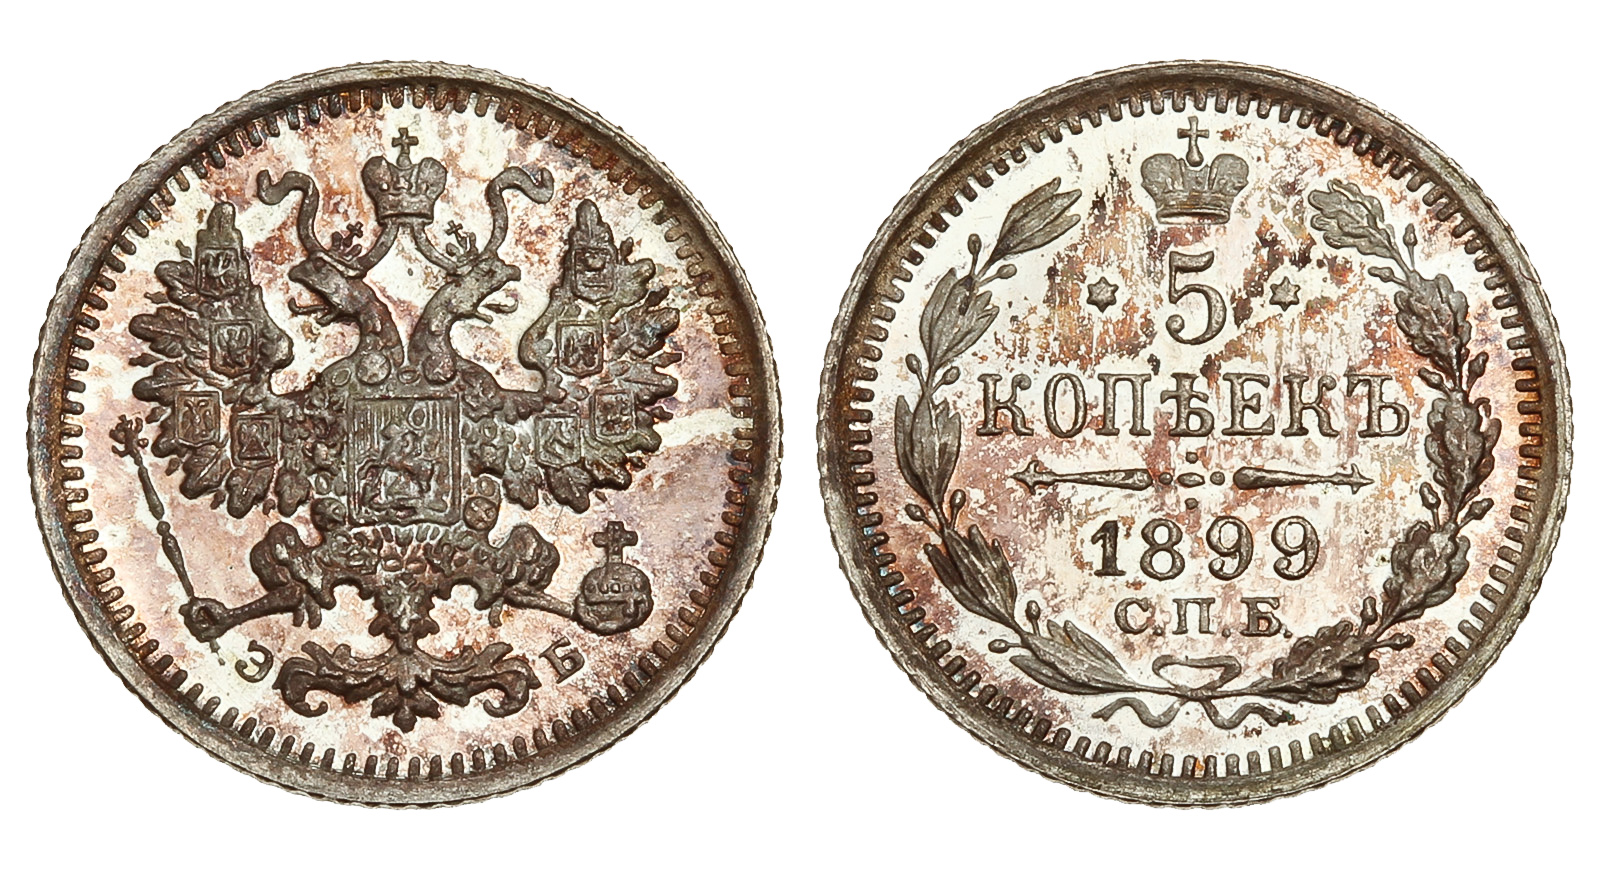 5 серебряных копеек 1899 года